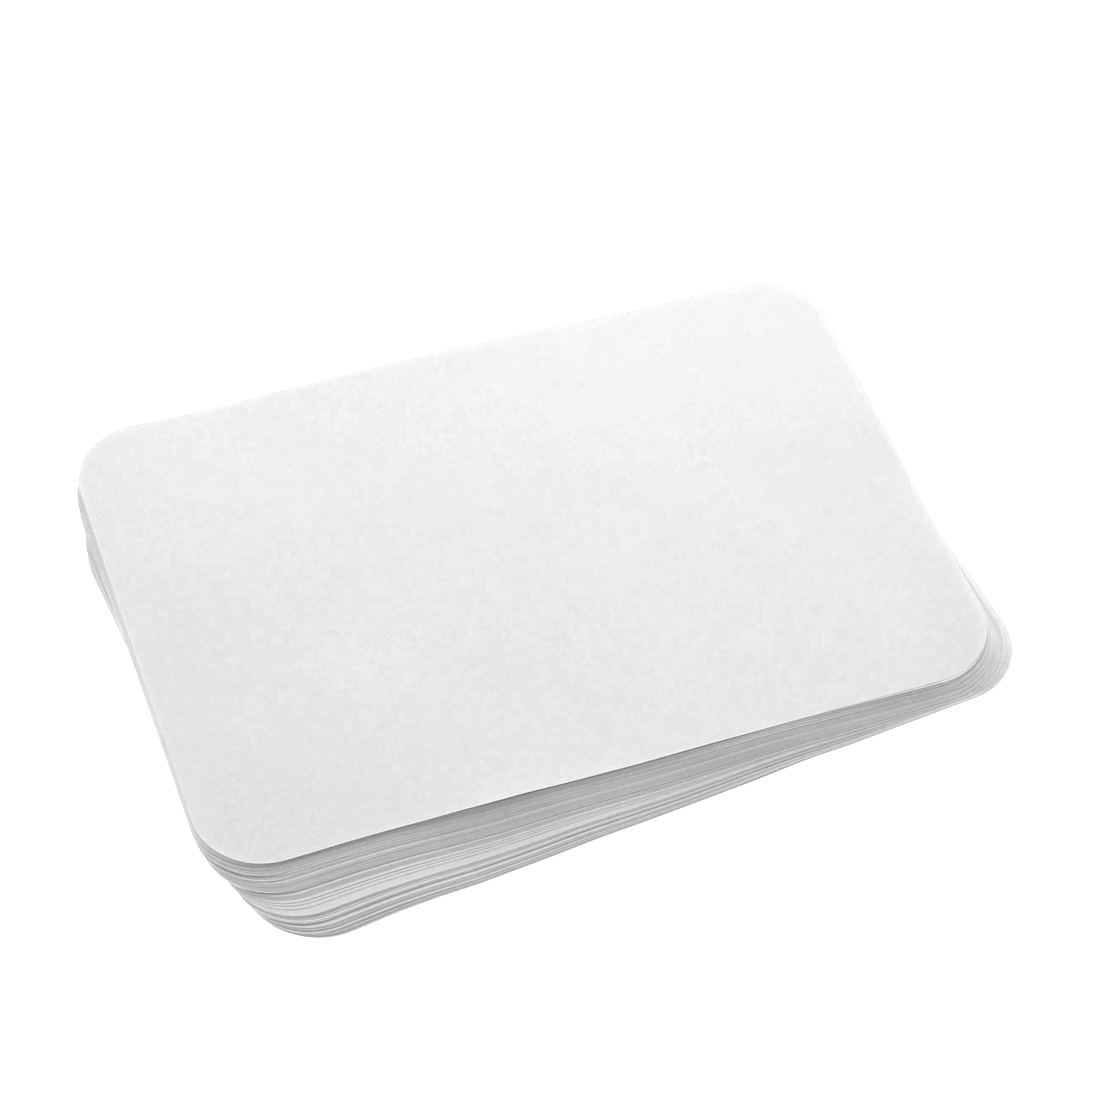 Bracket Tray Covers, Size D - SS White No.20, 10.25" x 15.75", White - 1000/Box